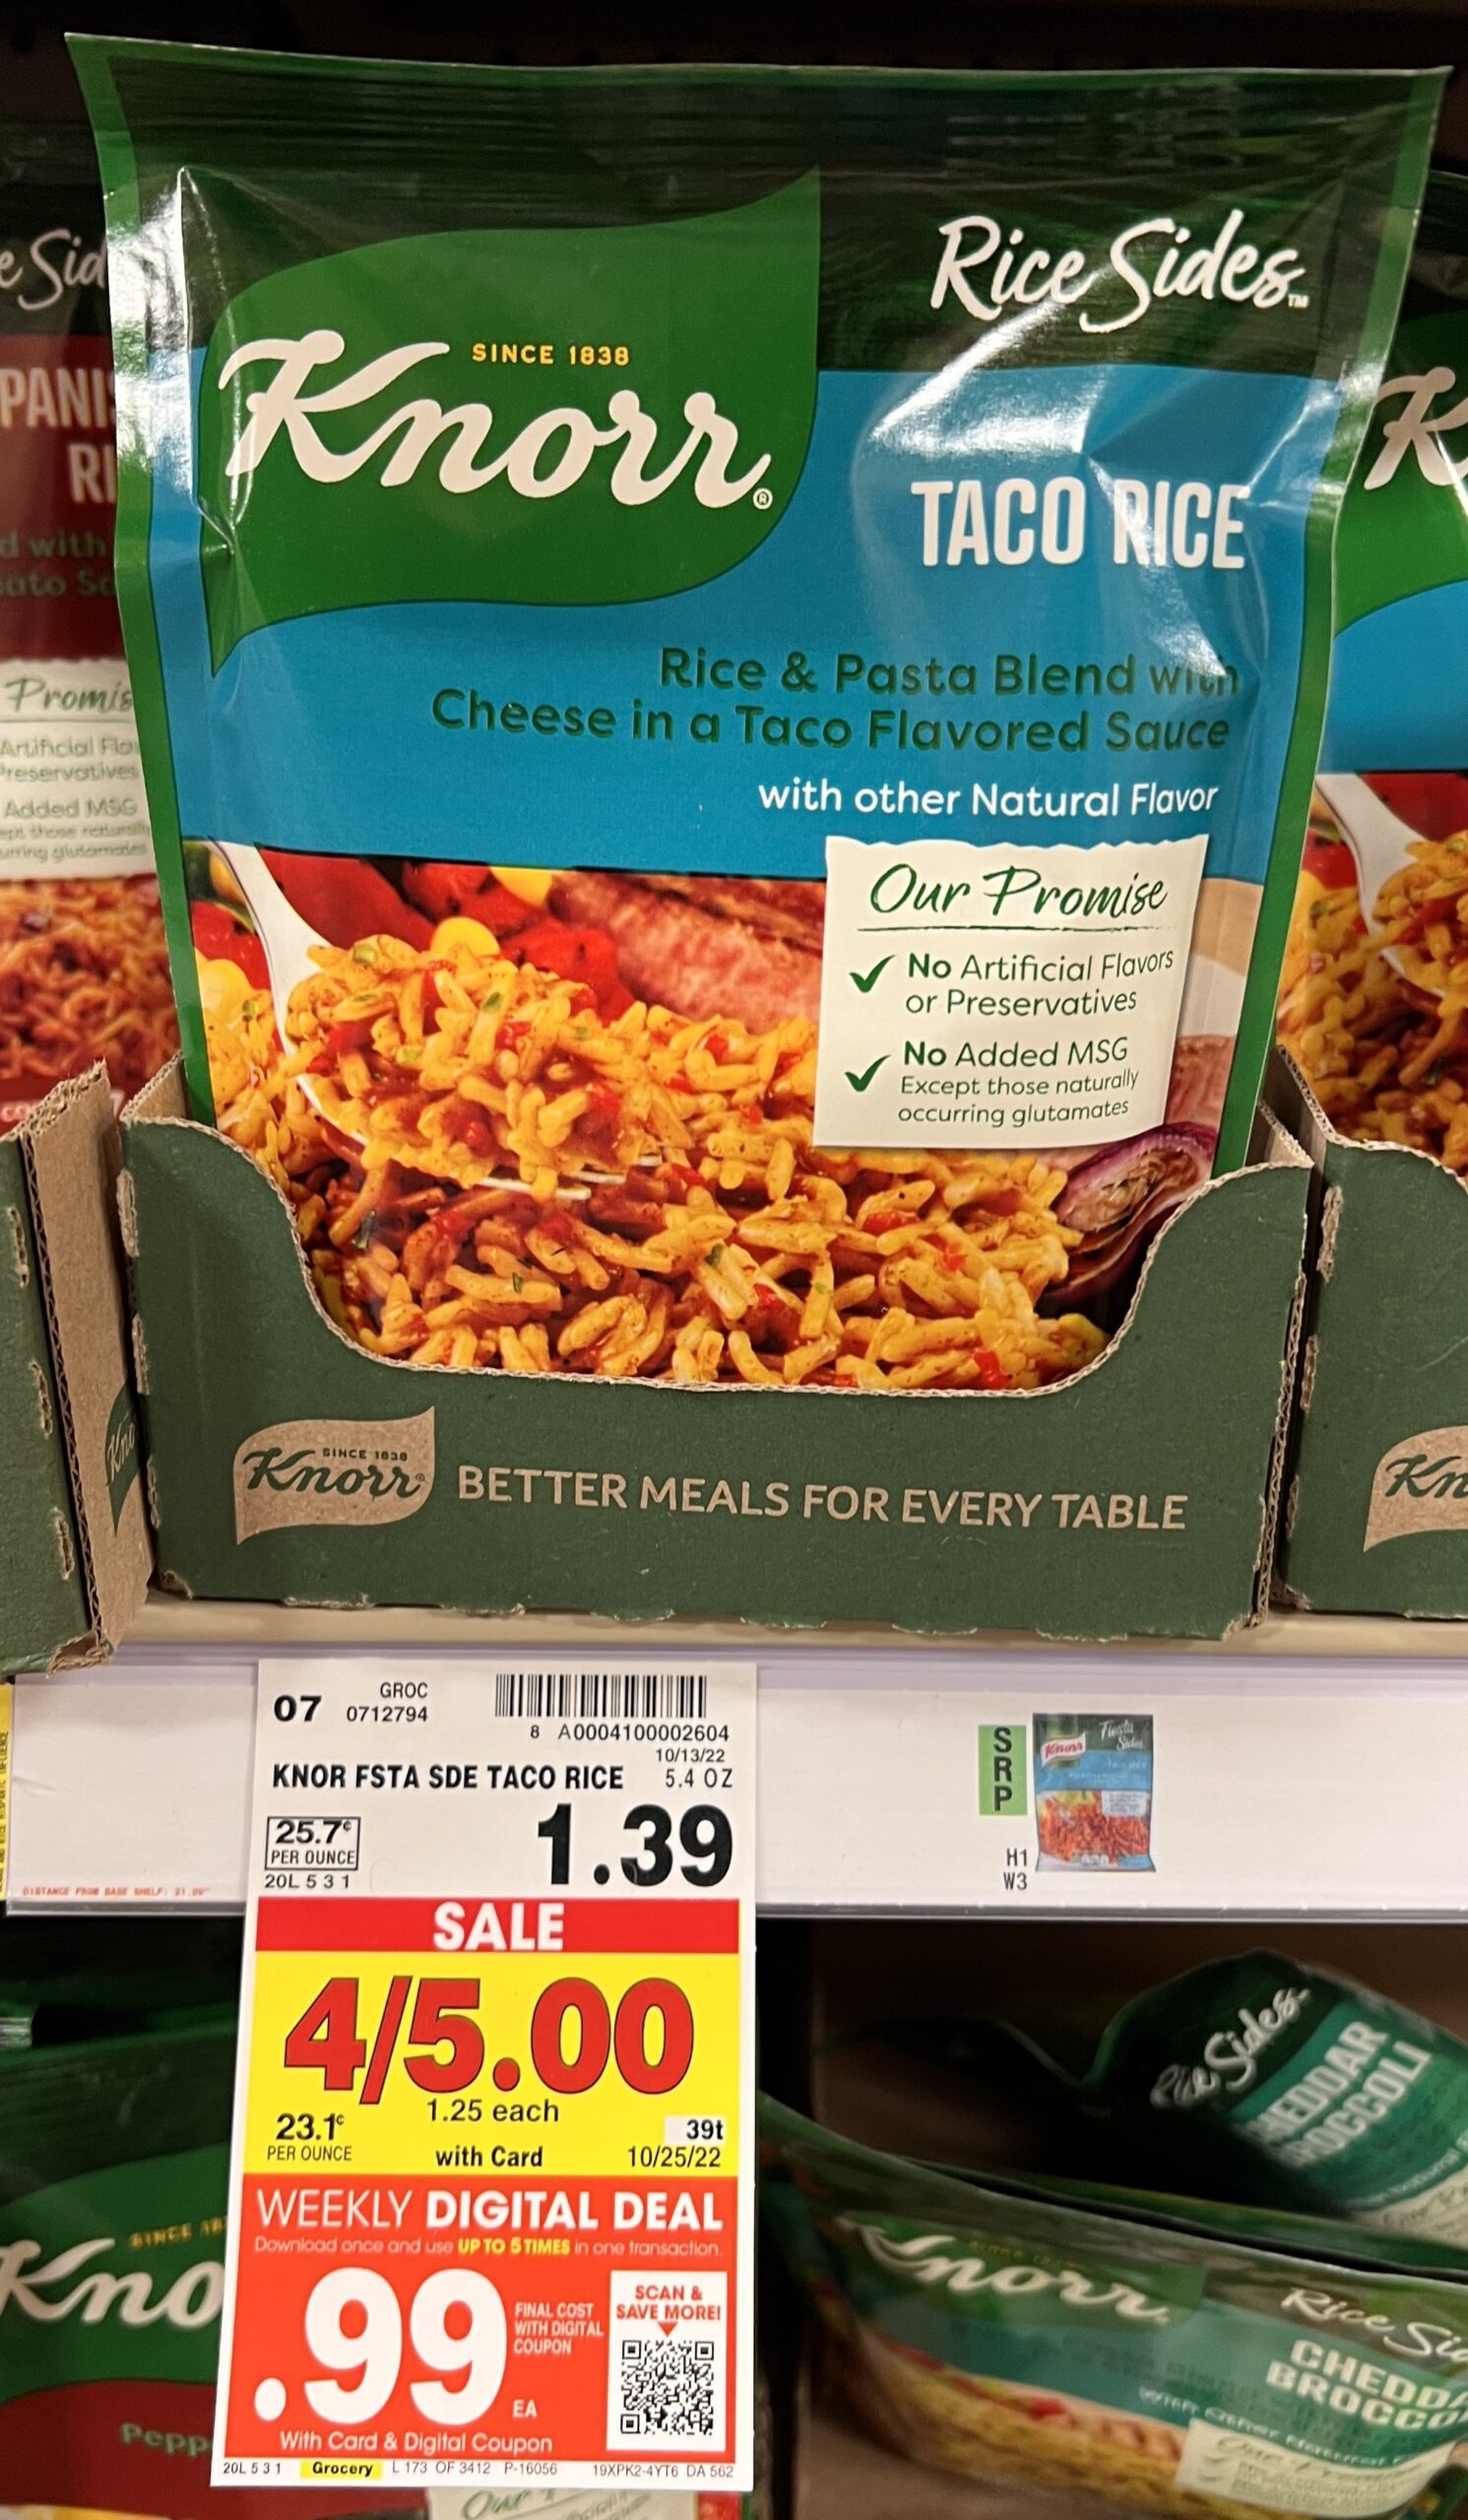 Knorr Rice Side Kroger Shelf Image_3